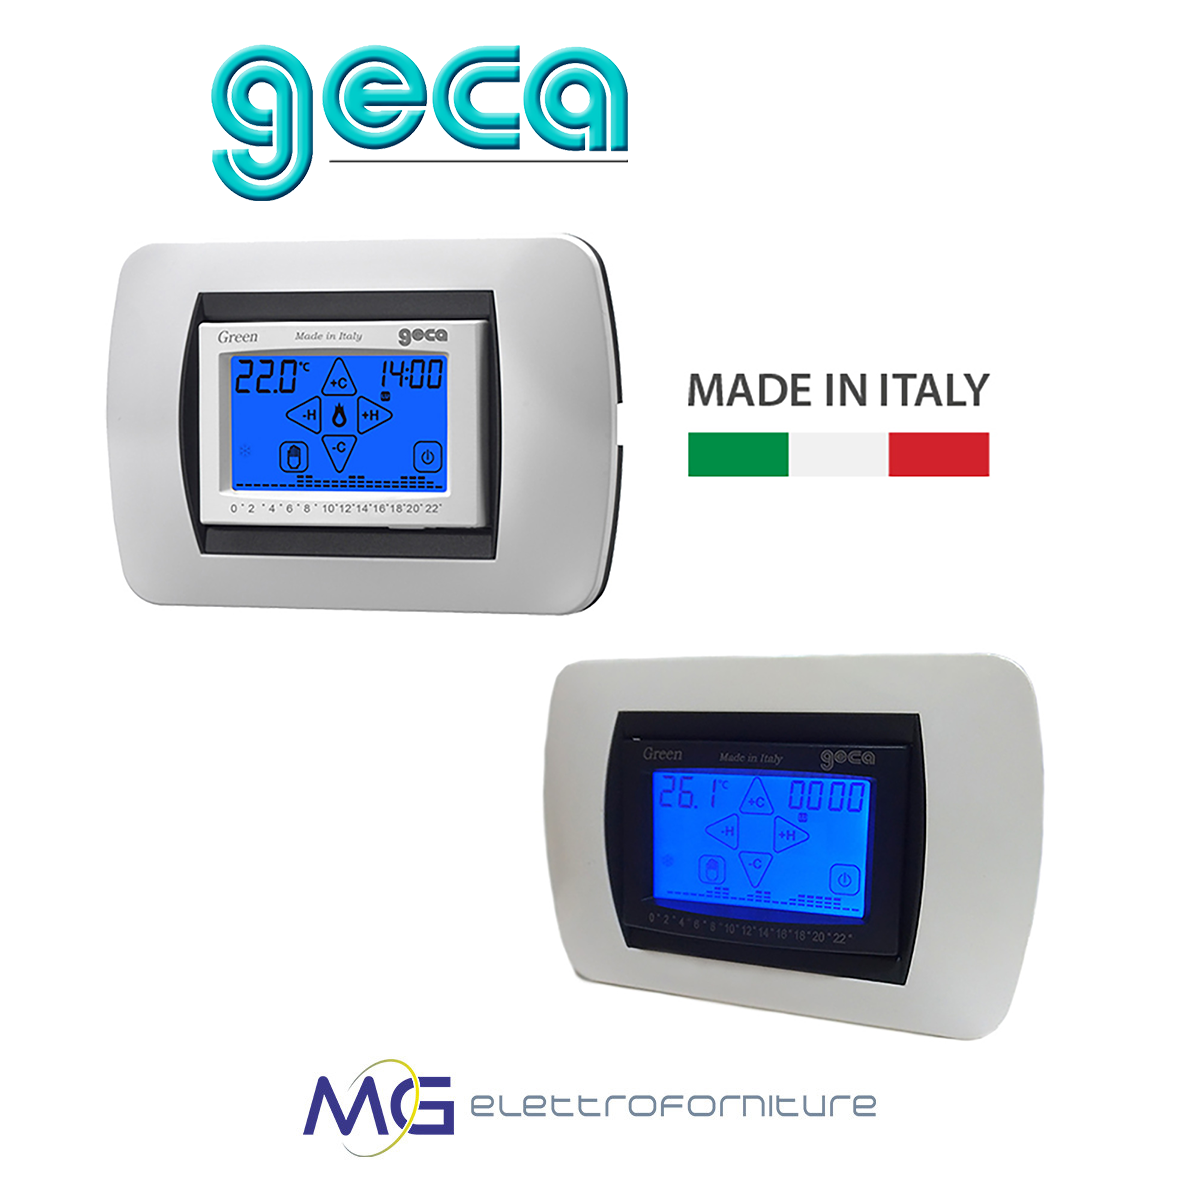 GECA GREEN 230 Cronotermostato digitale settimanale con display touch  screen da incasso 230V